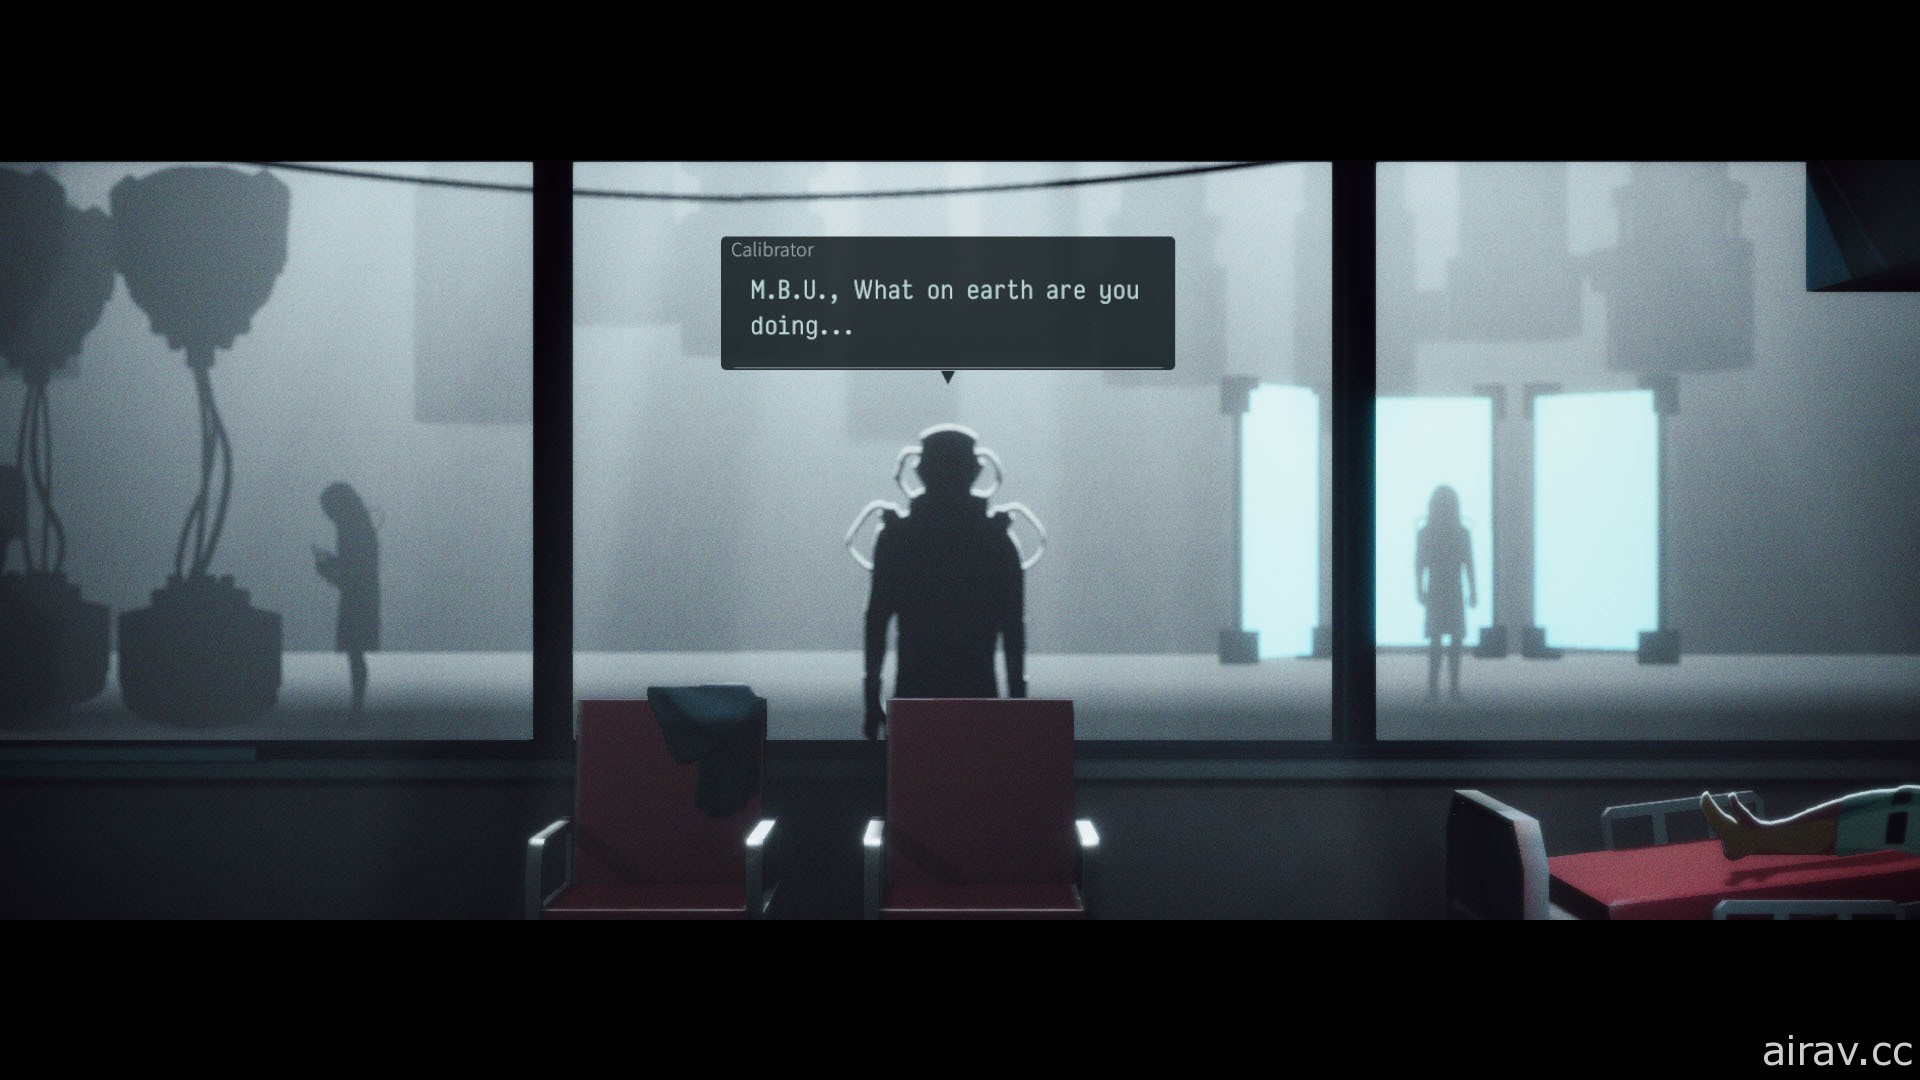 【E3 21】台灣題材 Cyberpunk 冒險遊戲《沉沒意志》曝光首部前導預告片